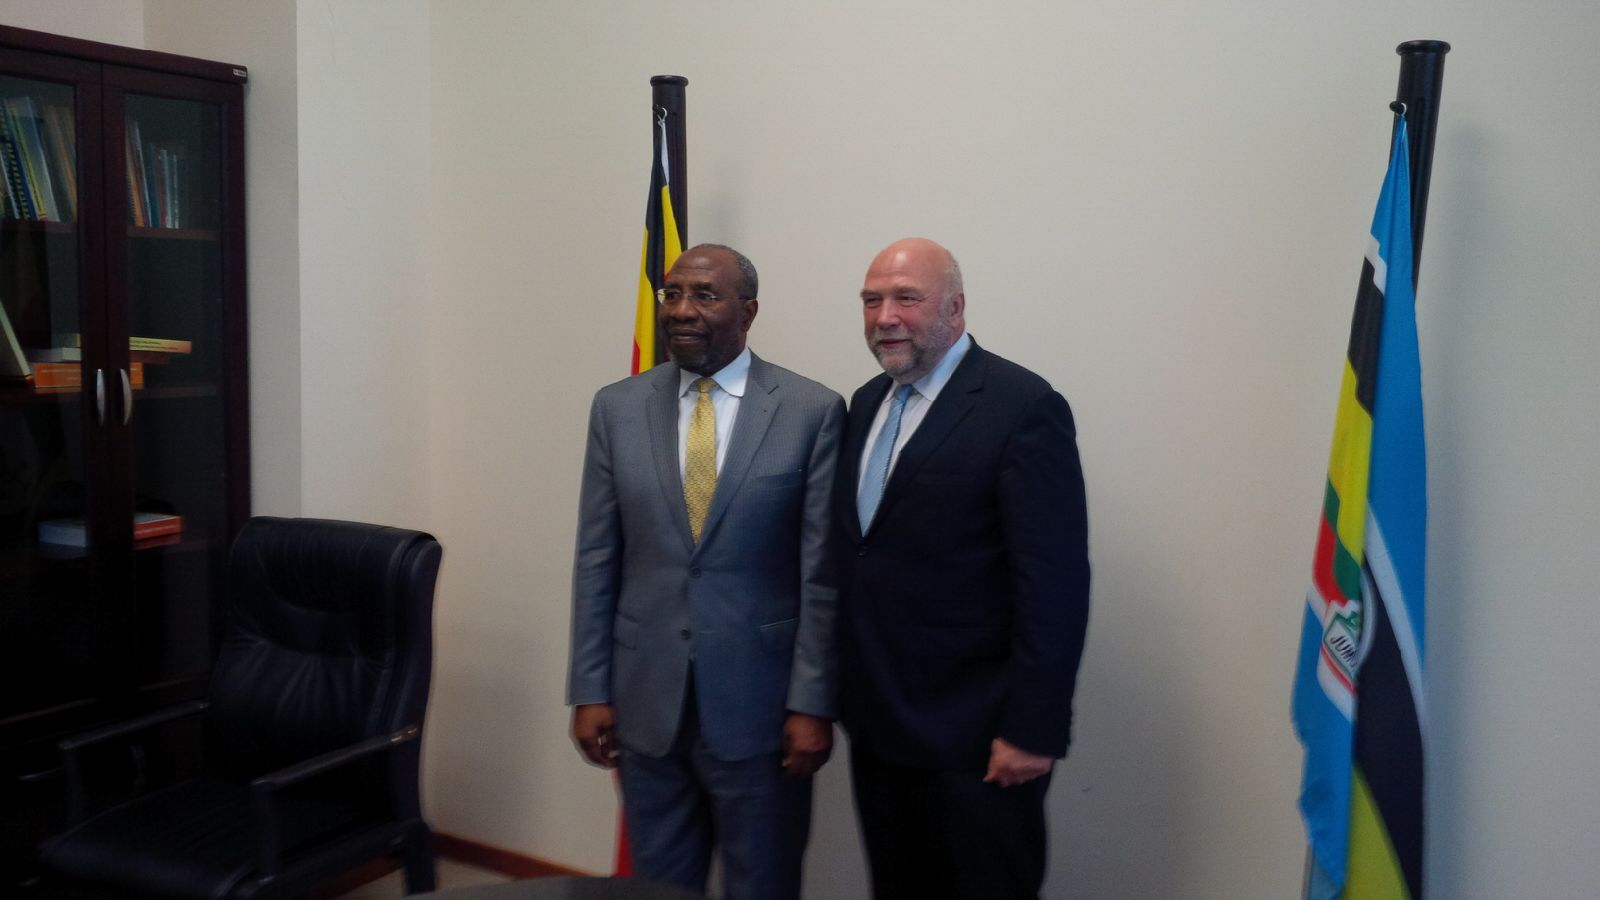 (Günter Nooke zusammen mit dem ugandischen Premierminister Ruhakana Rugunda - Bildnachweis: BMZ/Günter Nooke)